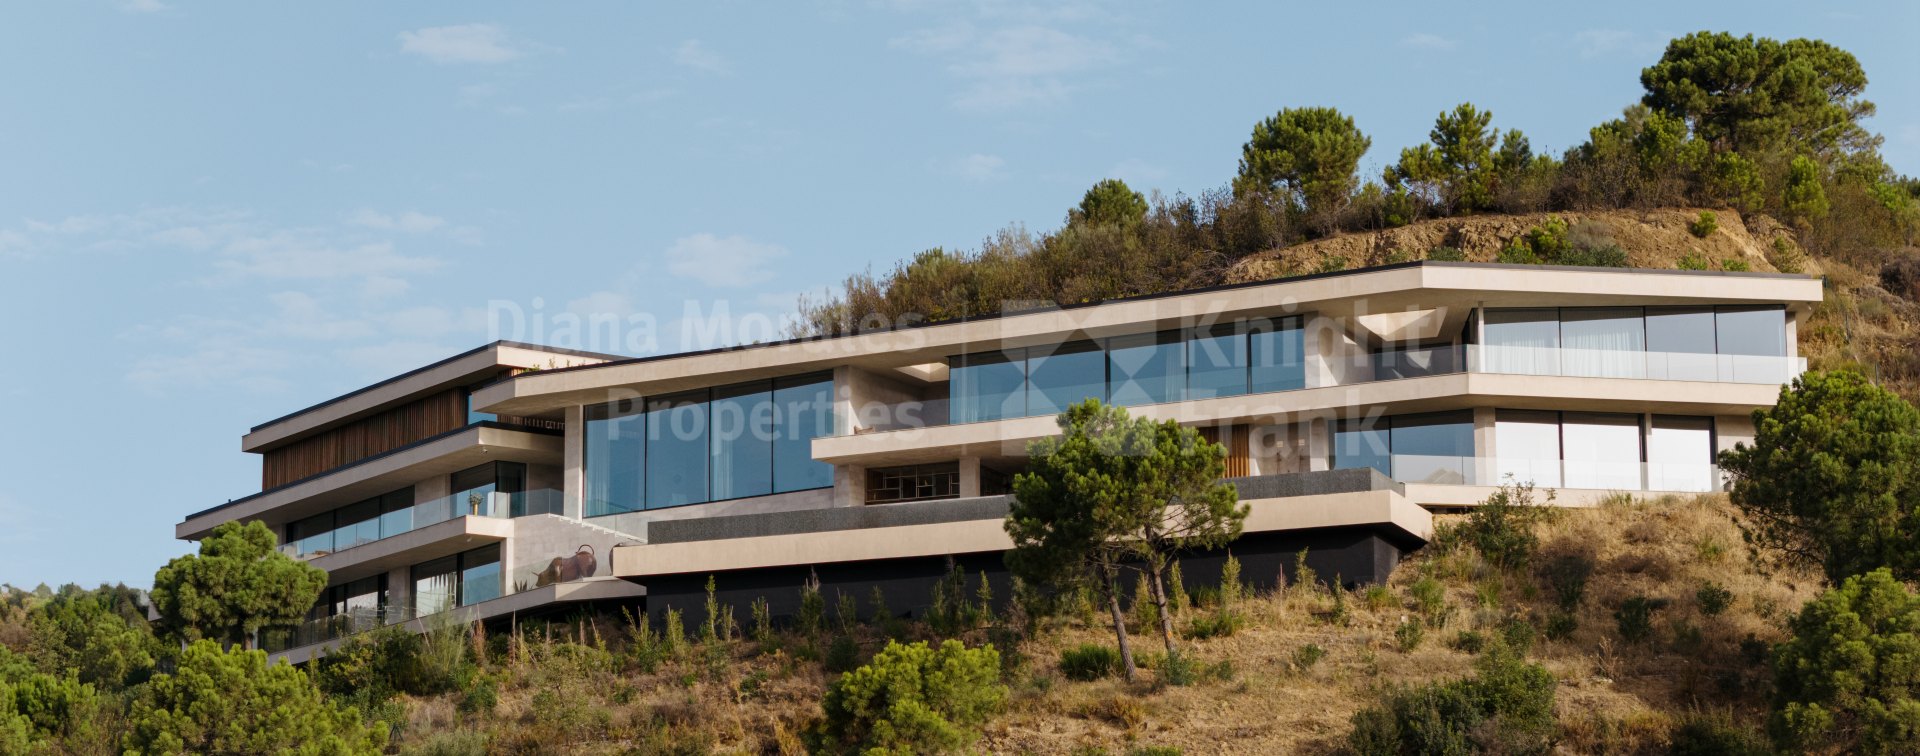 Monte Mayor, Villa ecológica ultra moderna con vistas panorámicas al mar